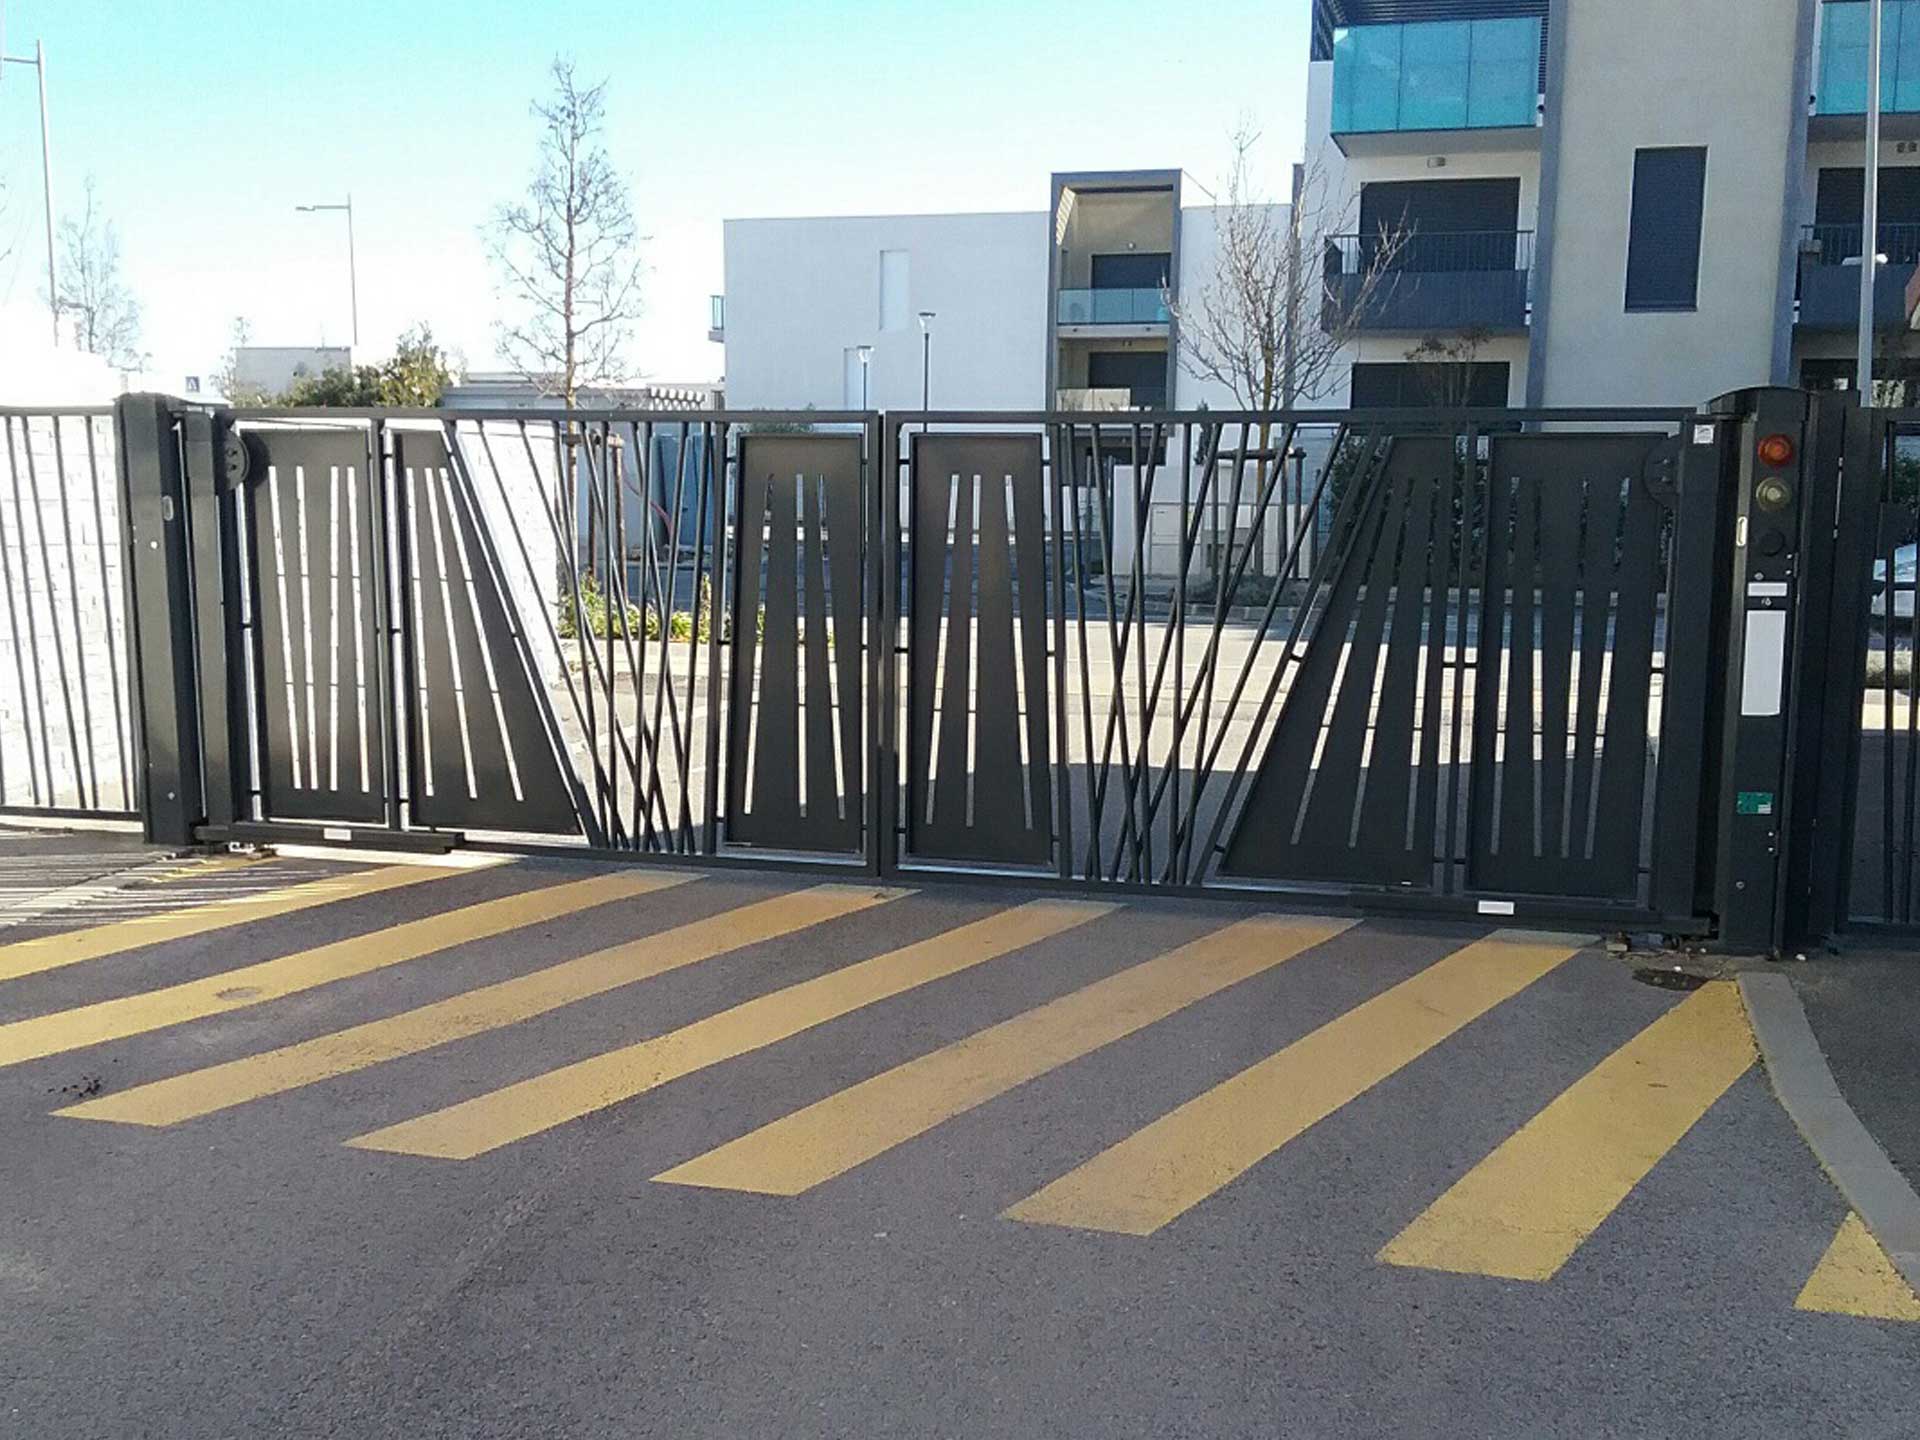 Vente de portail battant automatique avec Sim Fermetures pour l'habitat collectif à Montpellier